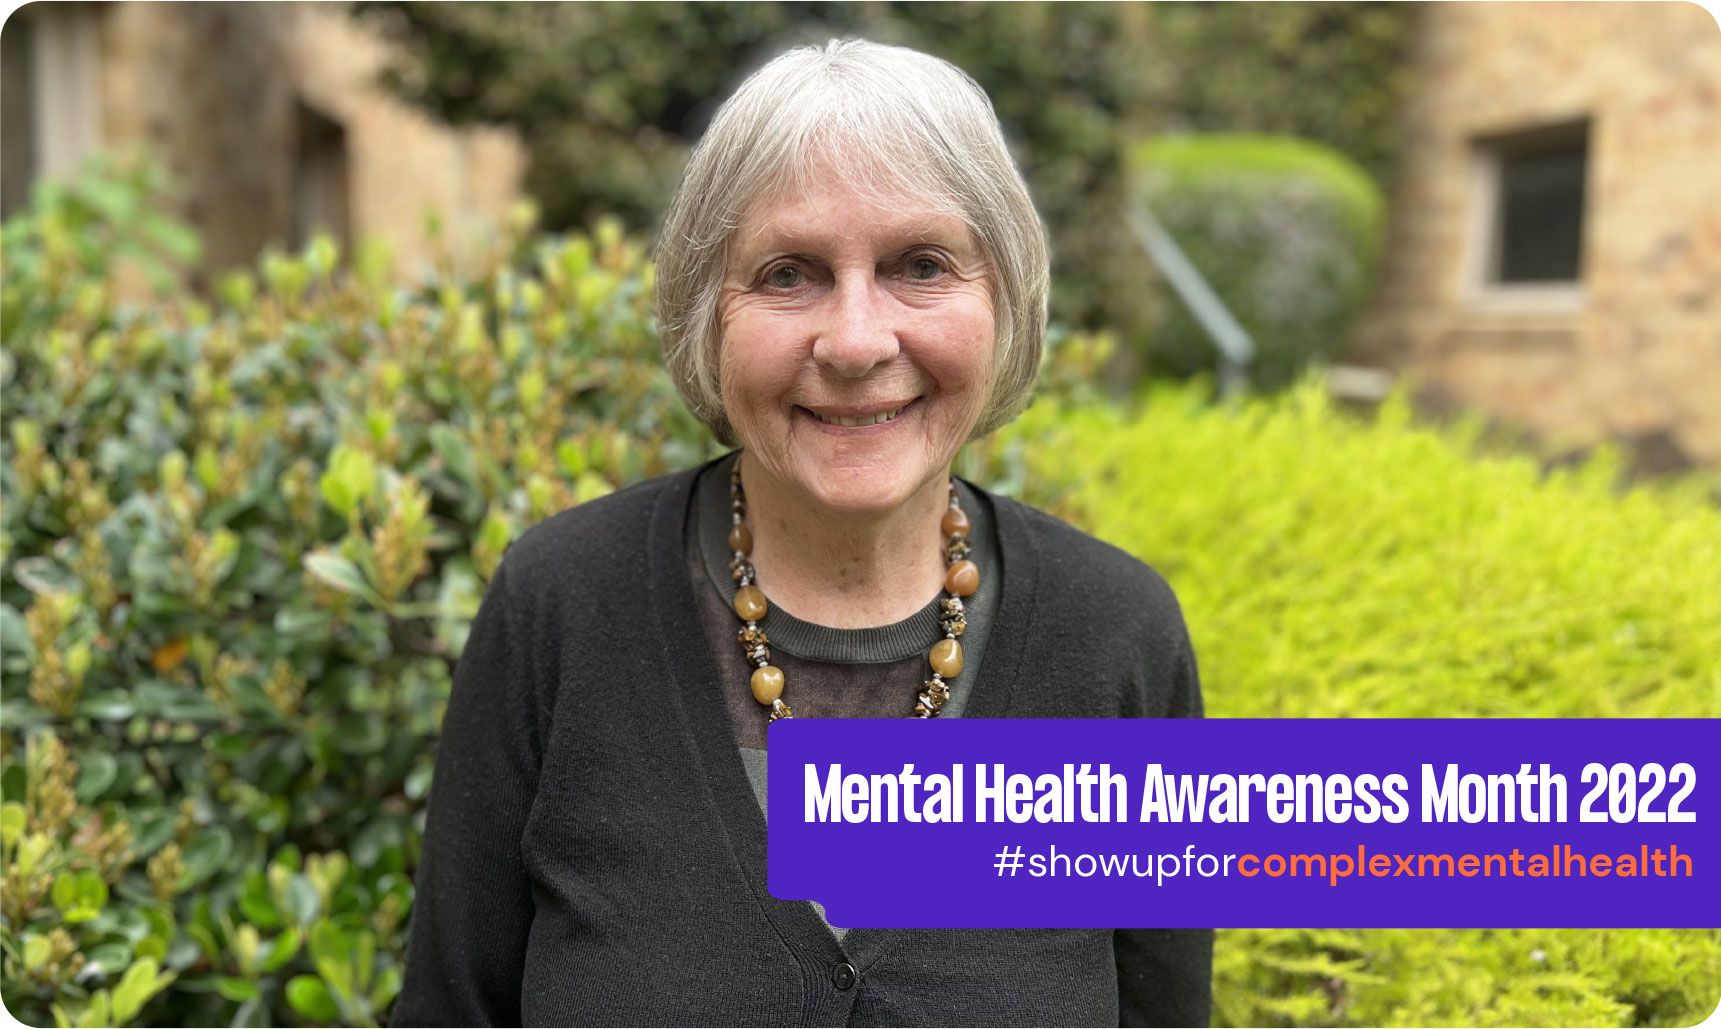 Mental Health Awareness Month 2022 - Elderly woman standing in garden